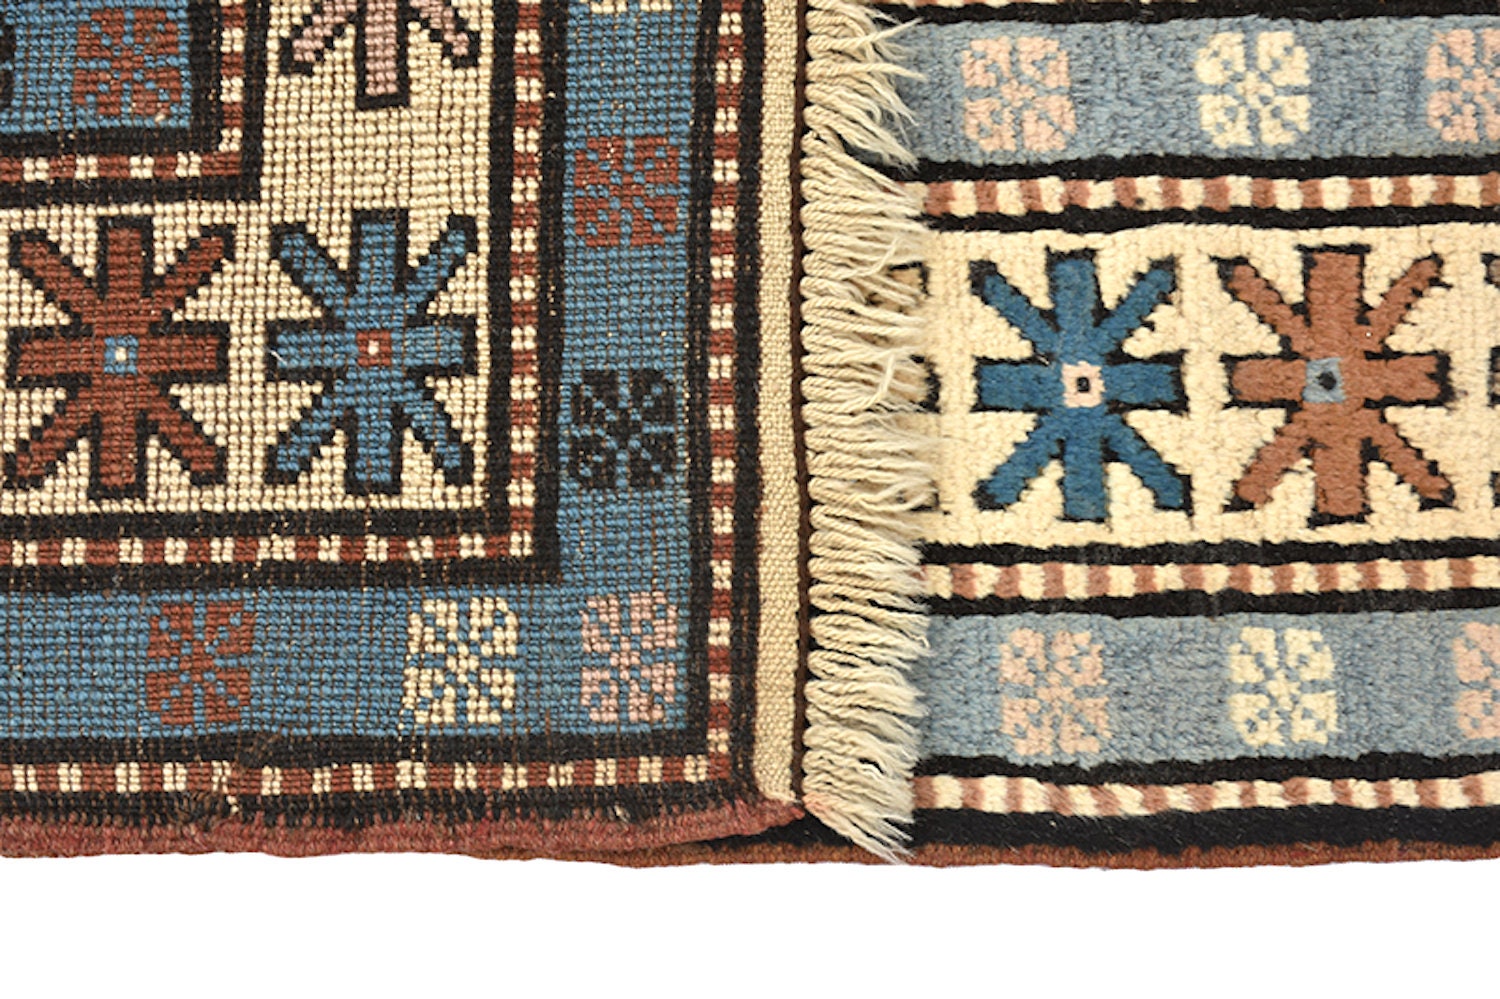 7.3 x 4.6 Feet Hand knotted rug, Brown & teal rug, Vintage geometric rug, Rustic nomadic rug, Eclectic Wool Antique Rug